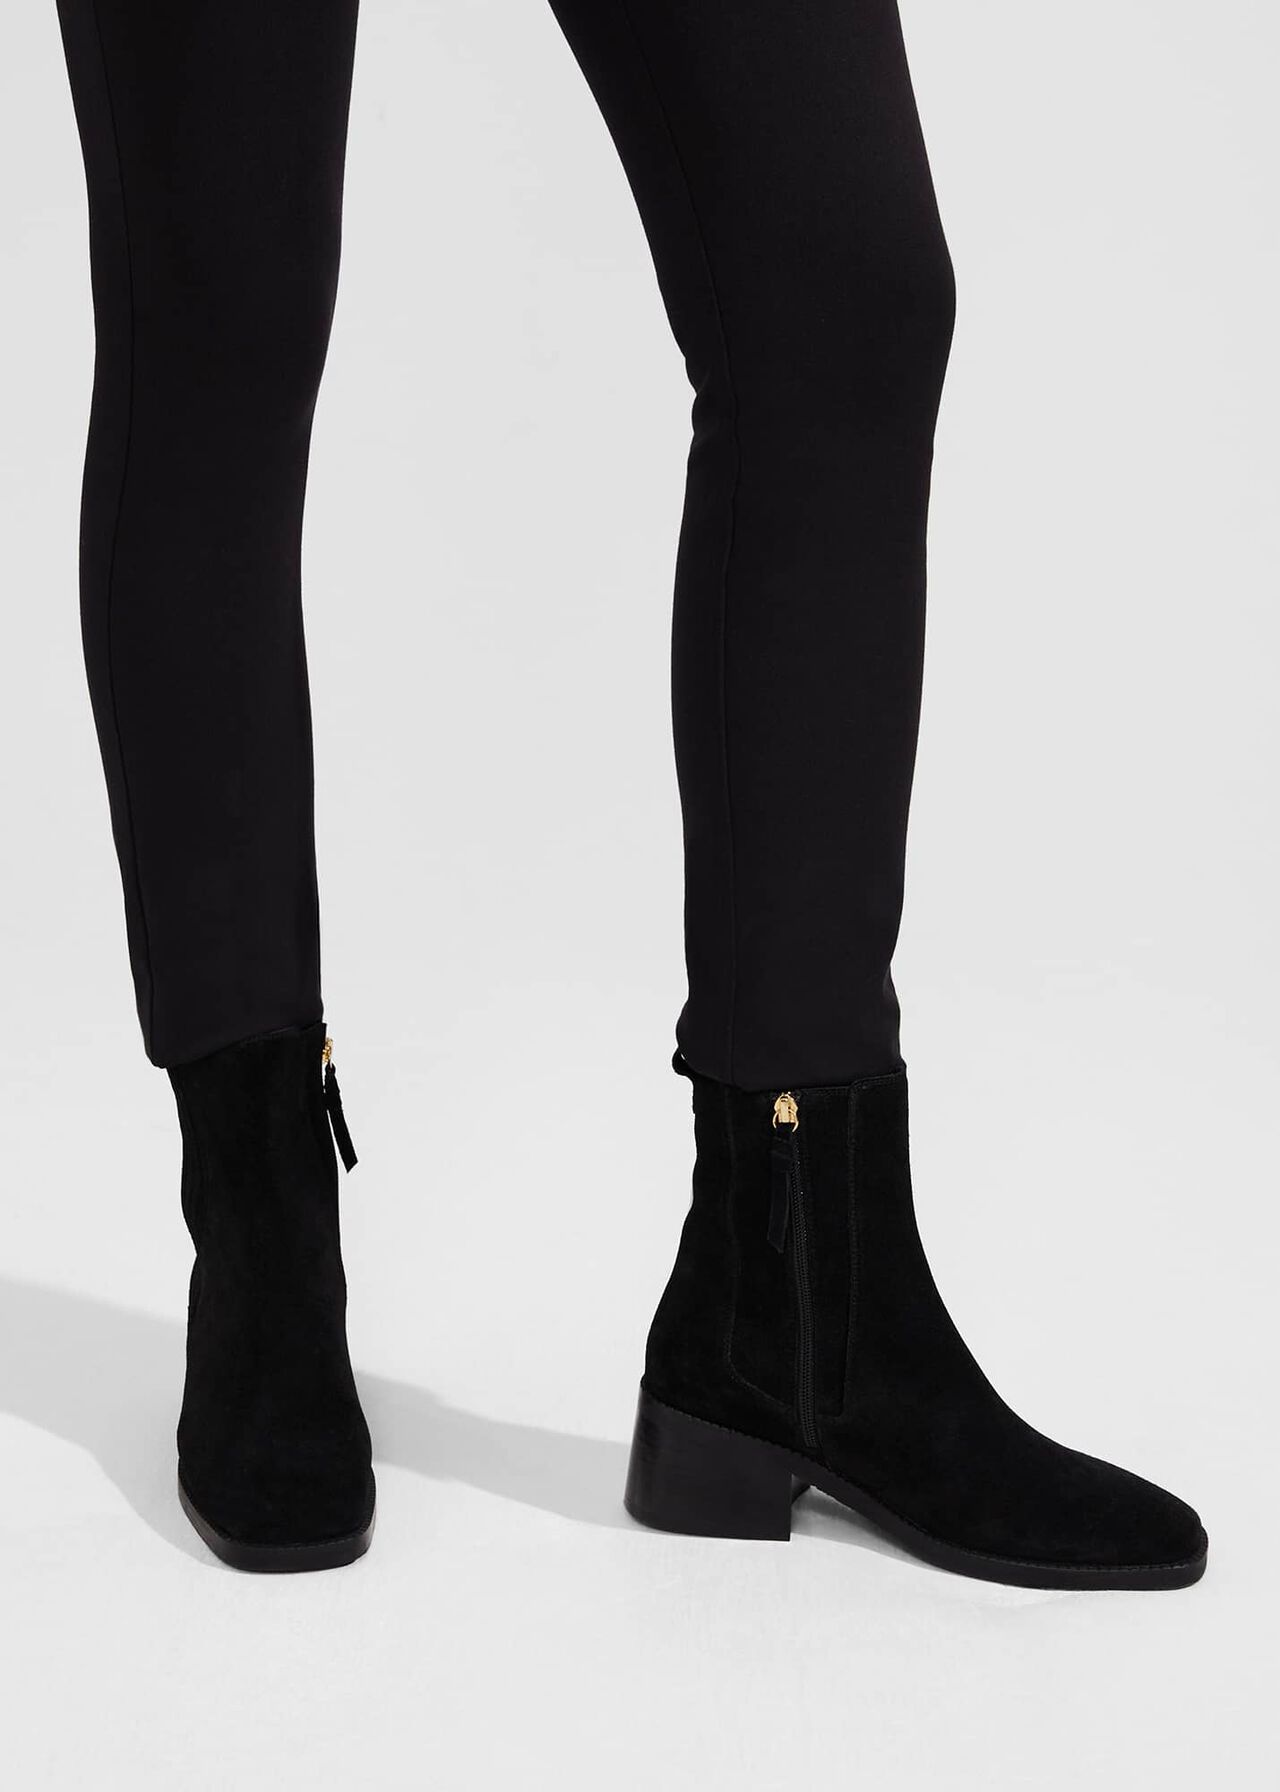 Fran Ankle Boots, Black, hi-res